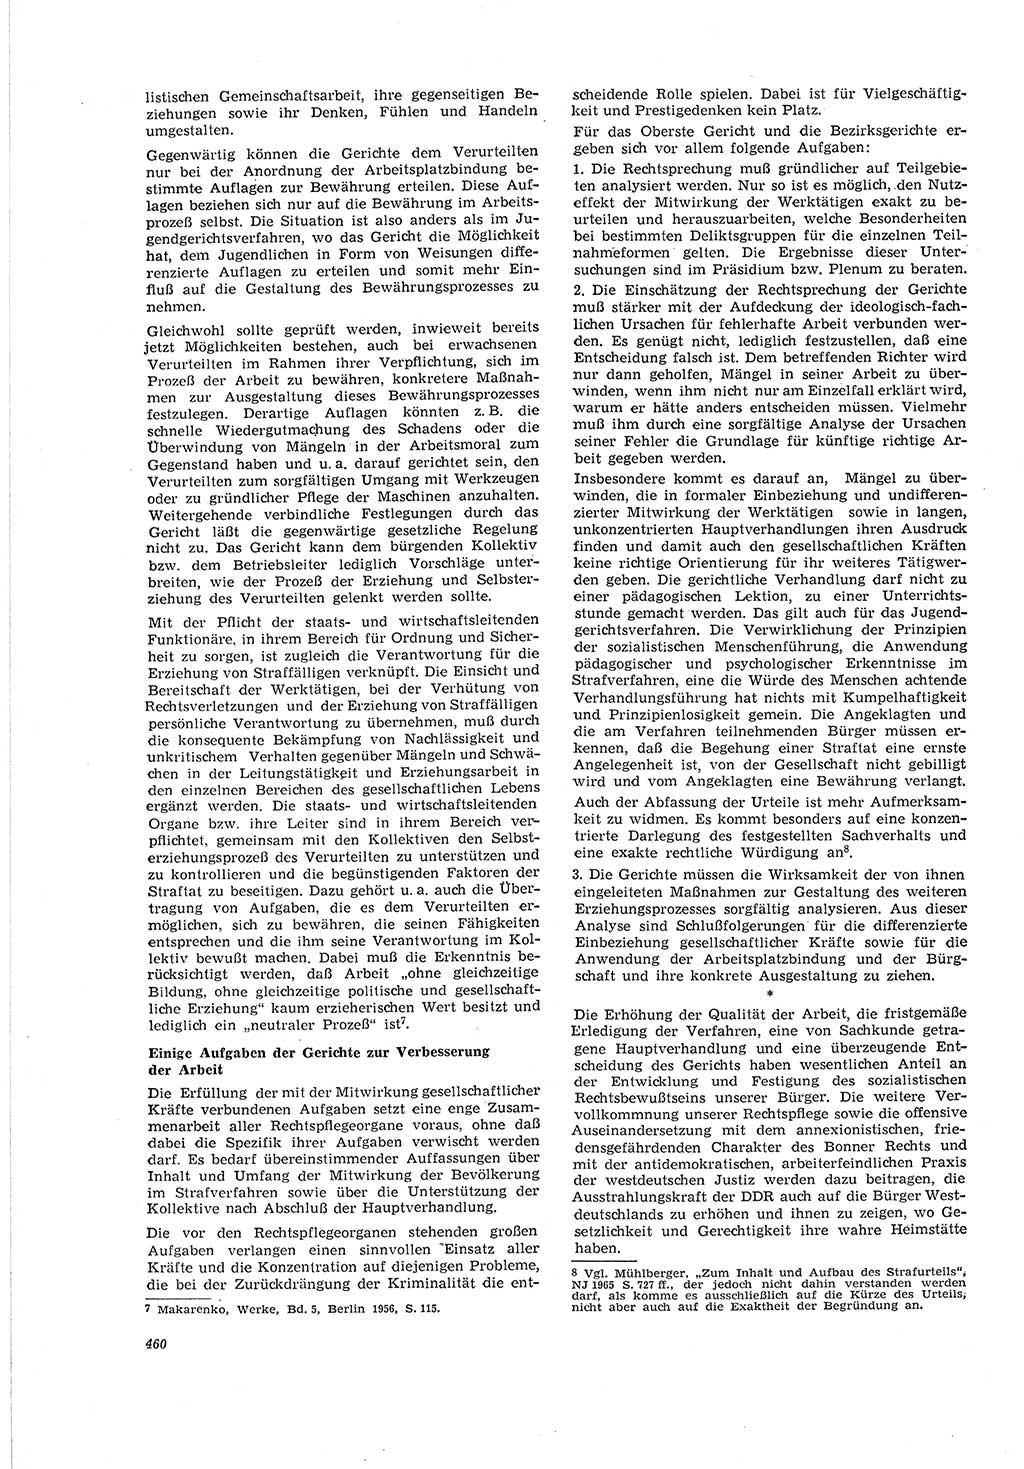 Neue Justiz (NJ), Zeitschrift für Recht und Rechtswissenschaft [Deutsche Demokratische Republik (DDR)], 20. Jahrgang 1966, Seite 460 (NJ DDR 1966, S. 460)